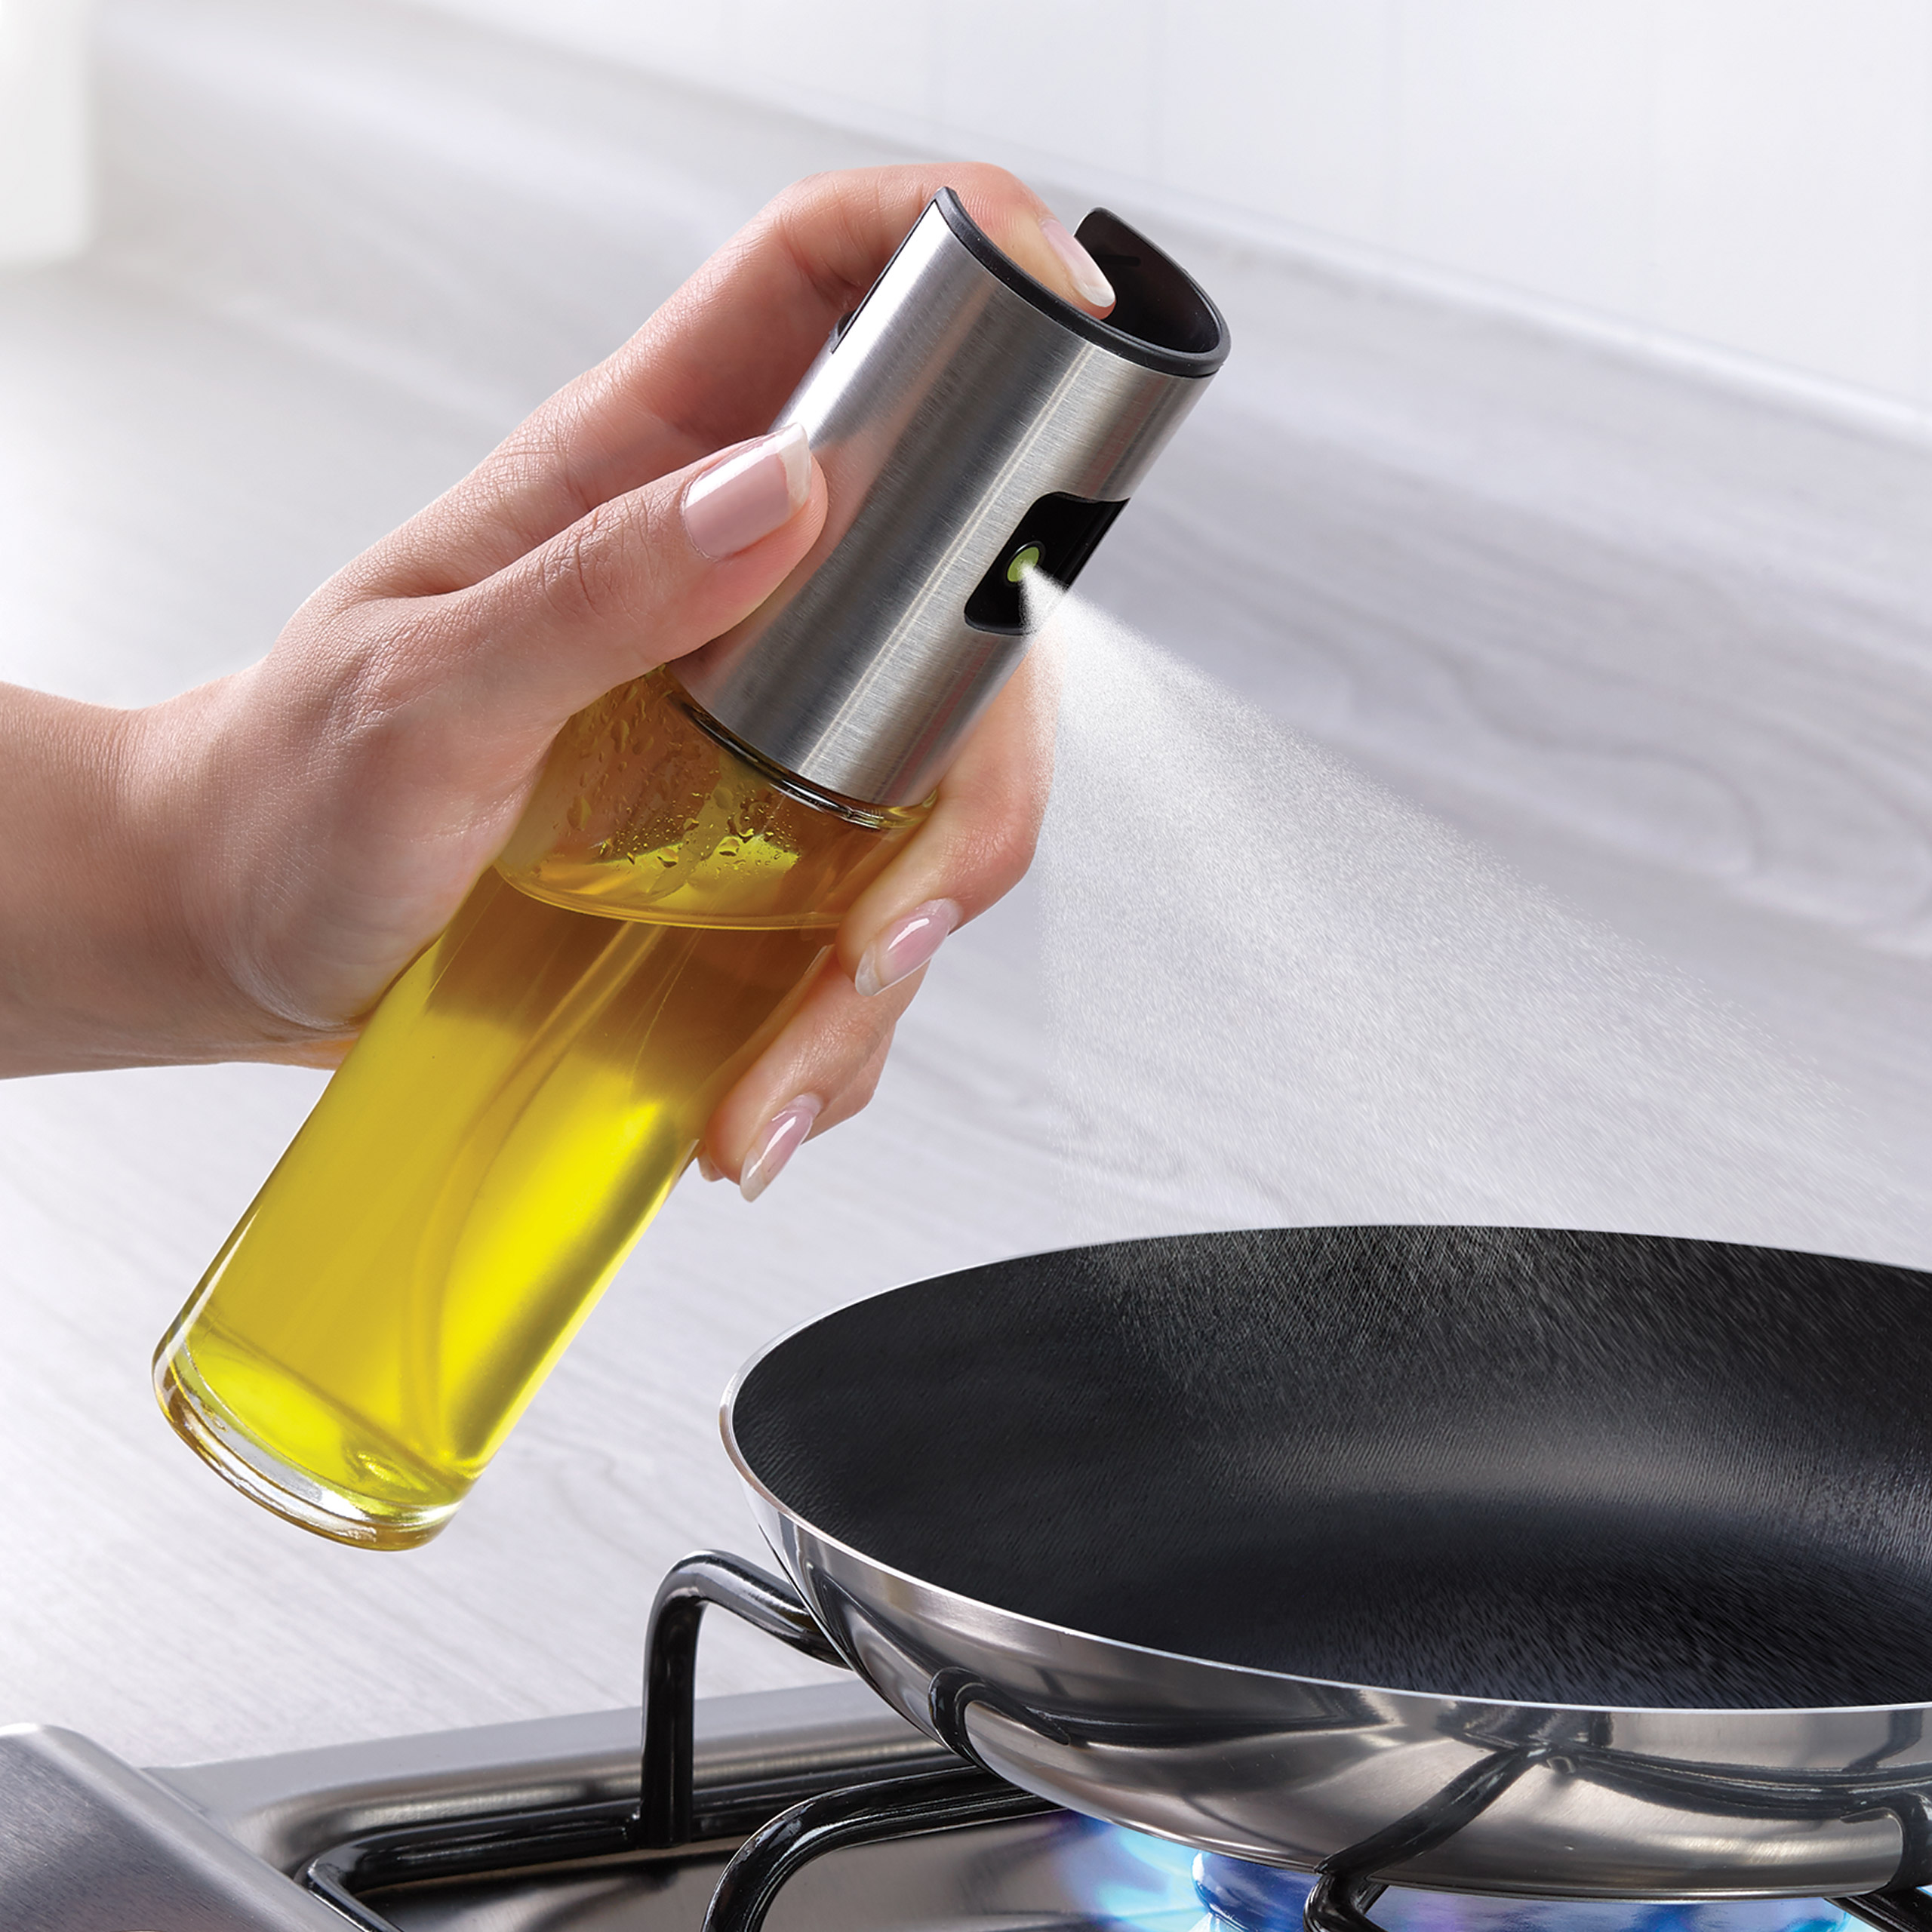 Dispensador / Atomizador de aceite para cocinar 